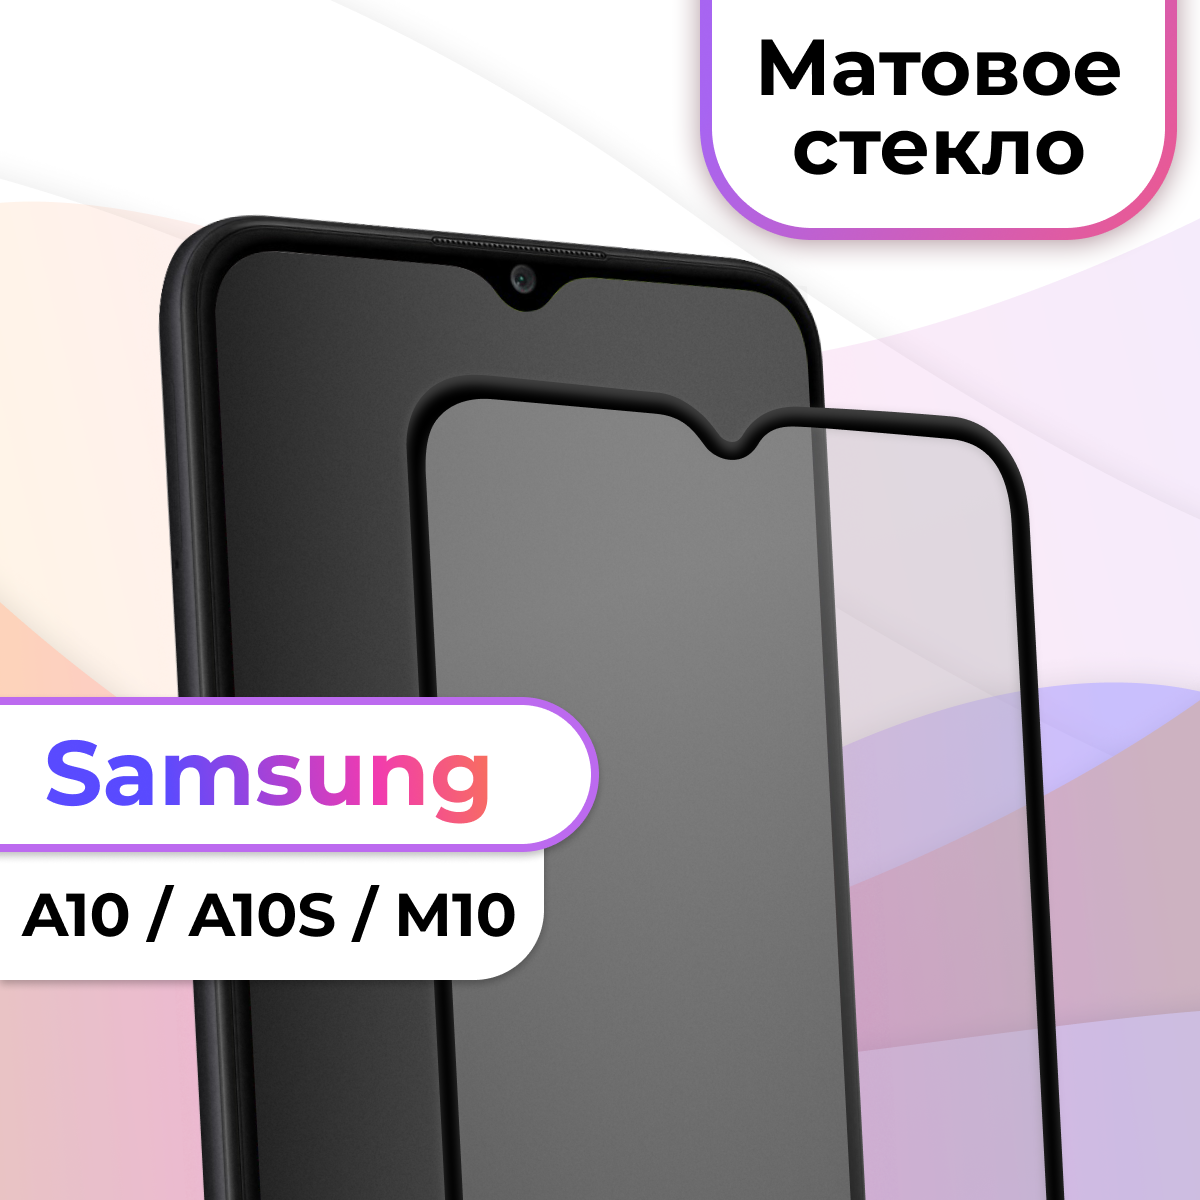 Защитное стекло на телефон Samsung Galaxy A10 A10S M10 / Матовое противоударное стекло на весь экран для смартфона Самсунг Галакси А10 А10С М10